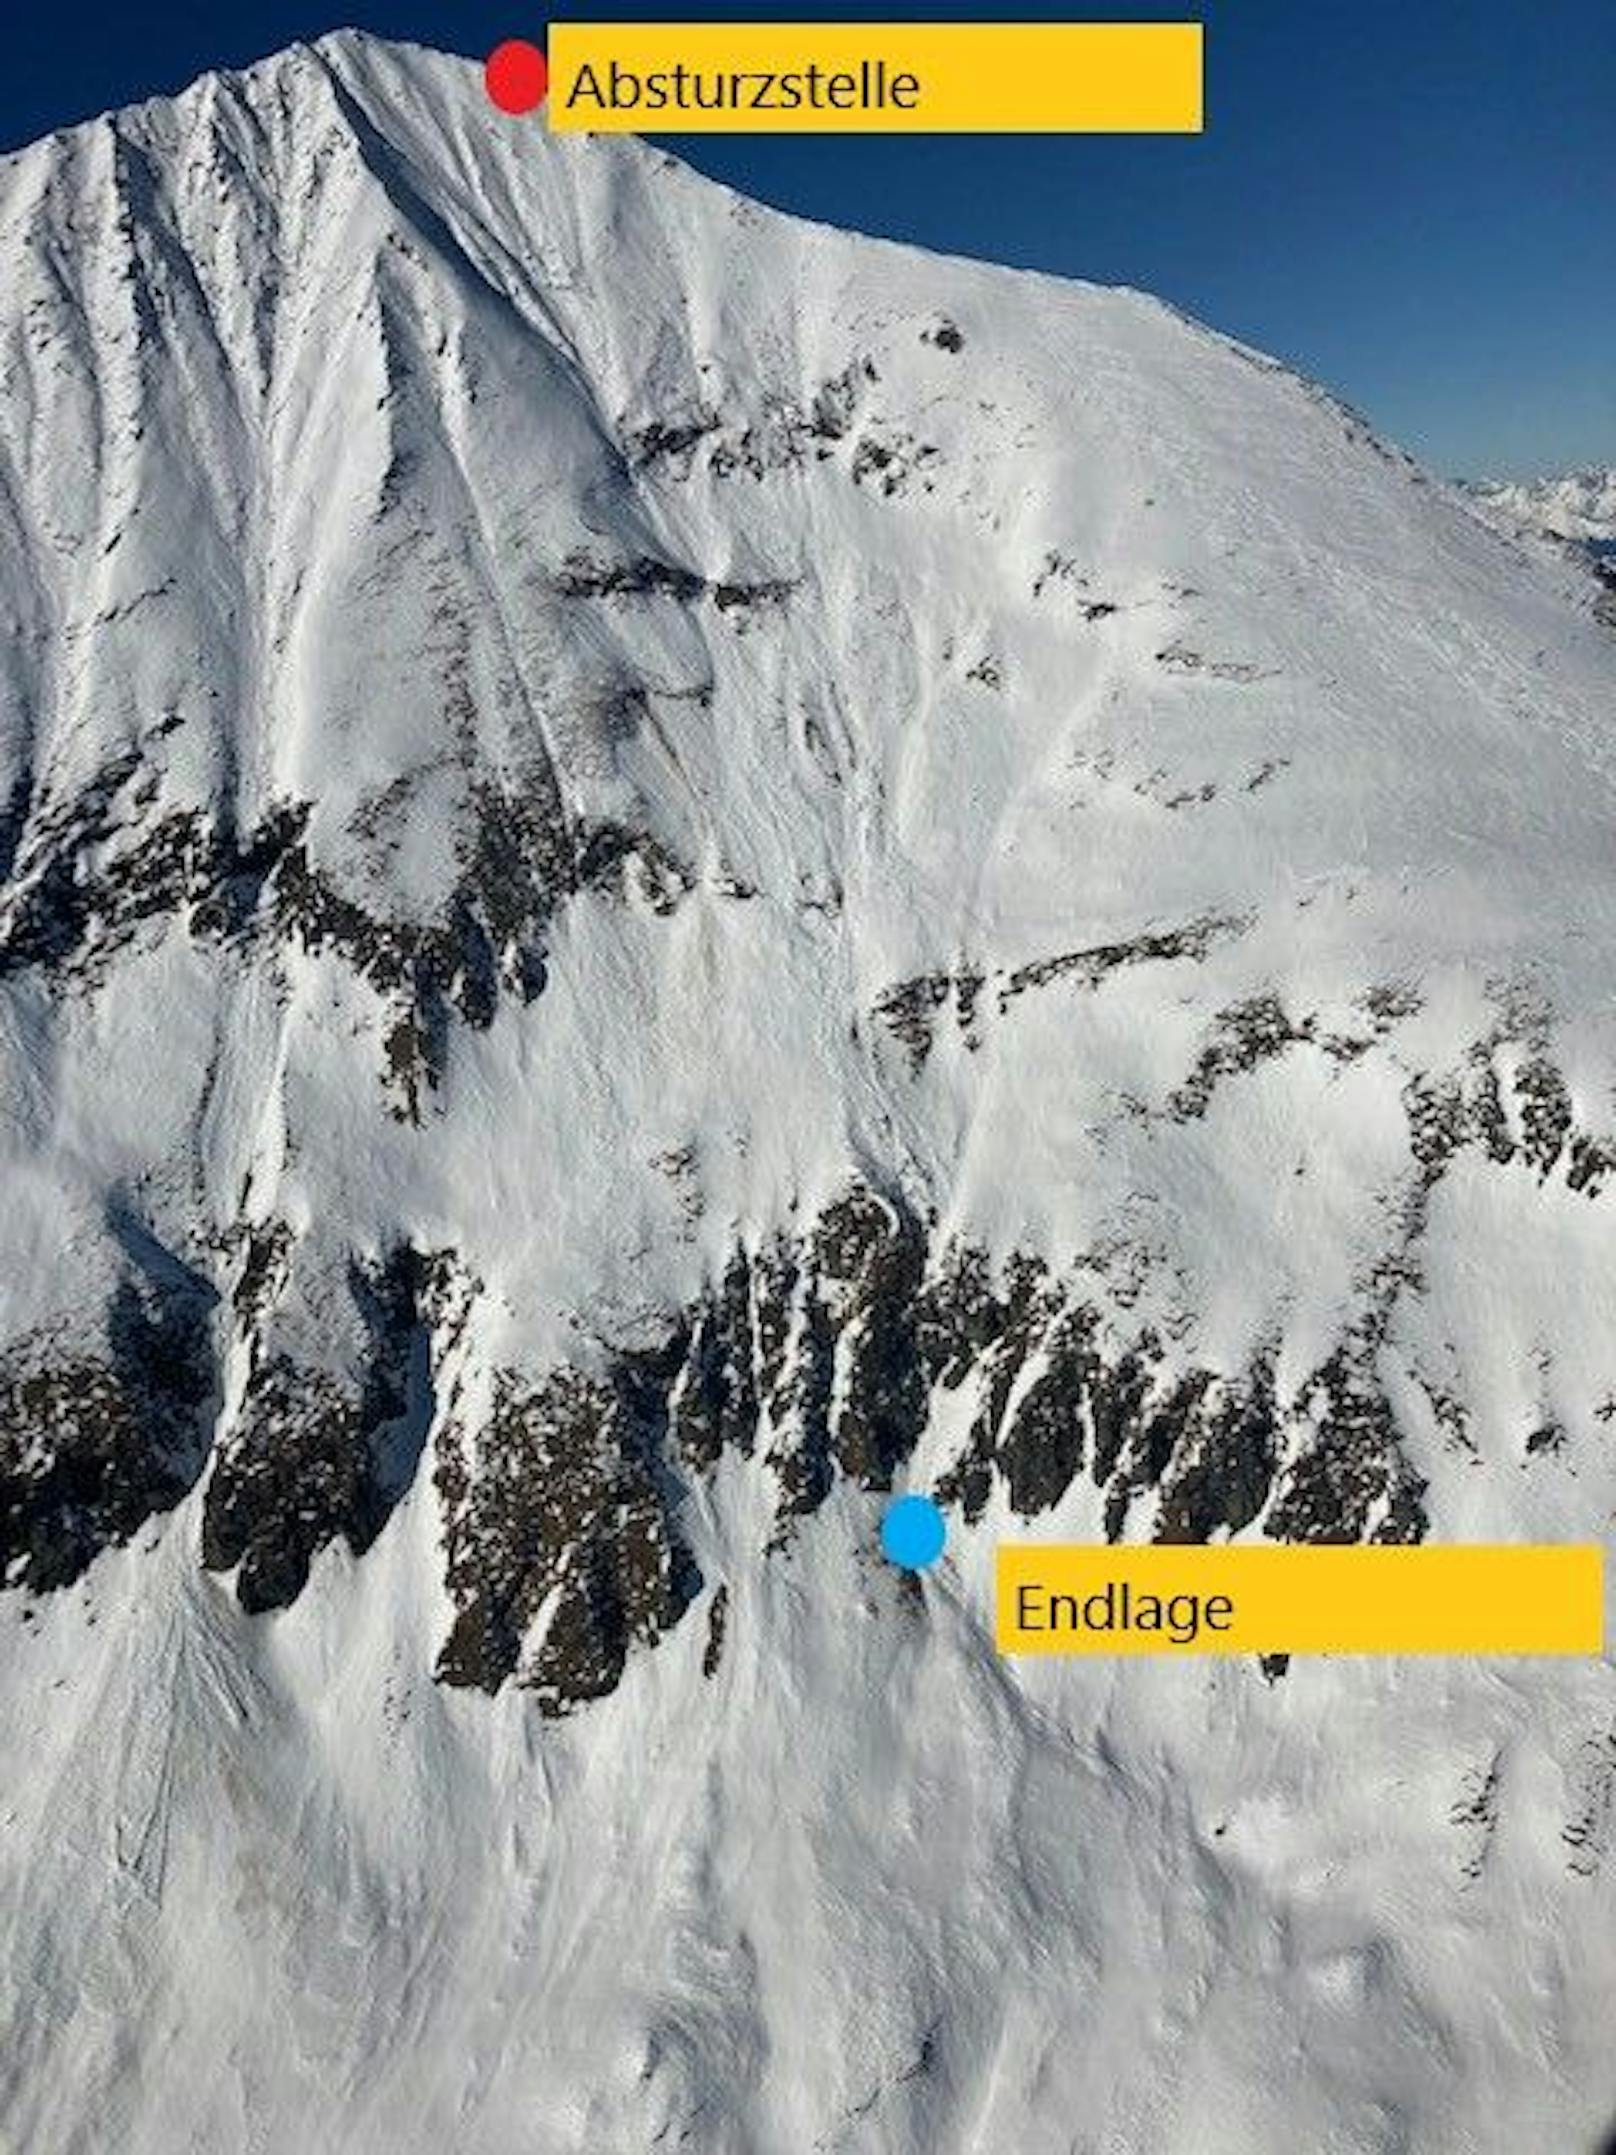 Knapp unterhalb des Ritterkopfe-Gipfels bei Rauris rutschte der Alpinist aus und stürzte mitsamt einer losgetretenen Lawine 700 Meter ab.